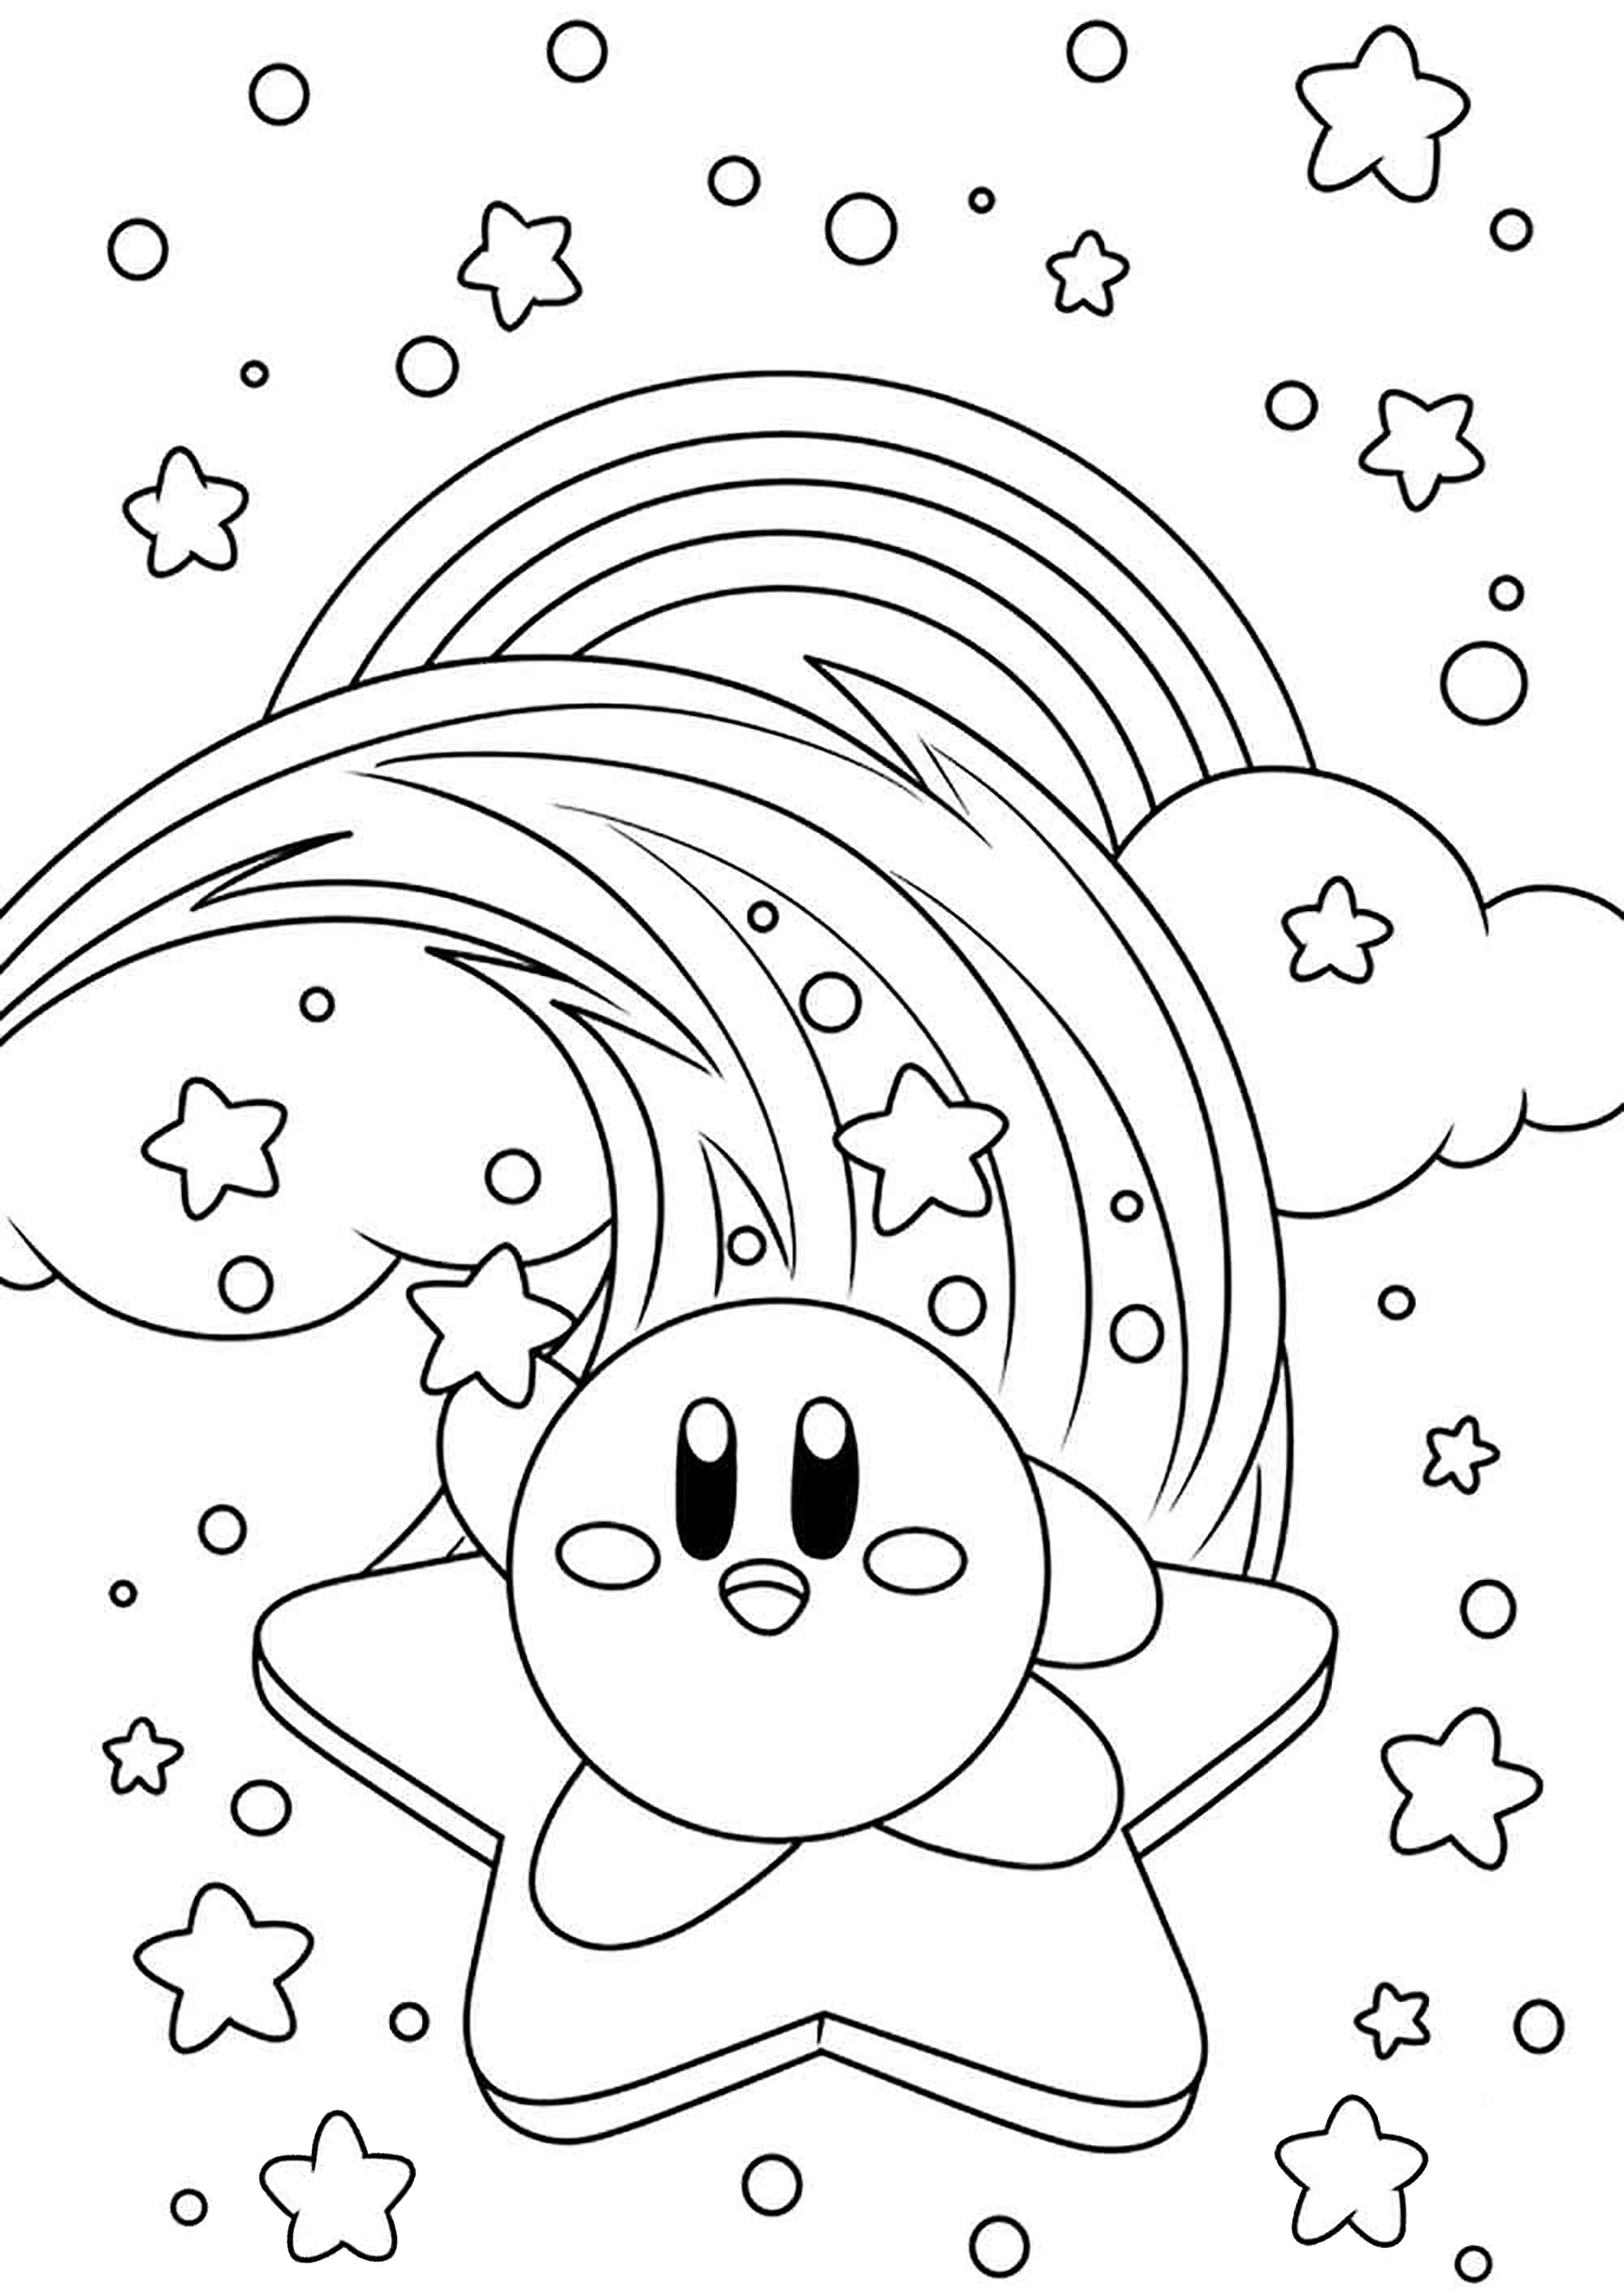 Kirby no céu estrelado